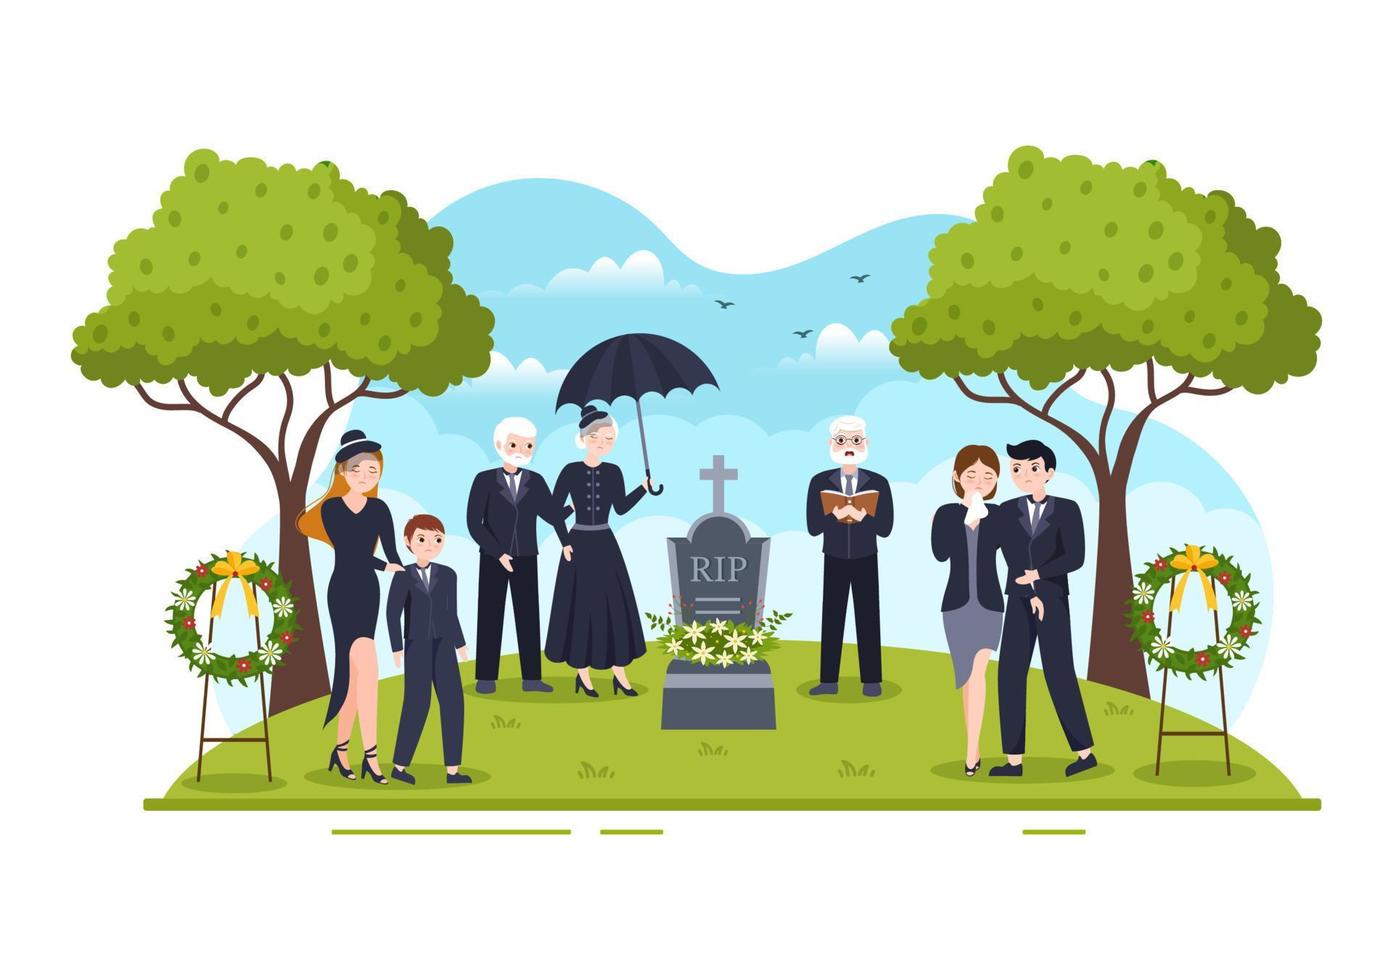 ceremonia fúnebre en la tumba de personas tristes vestidas de negro de pie y corona alrededor del ataúd en ilustración de plantilla dibujada a mano de caricatura plana vector